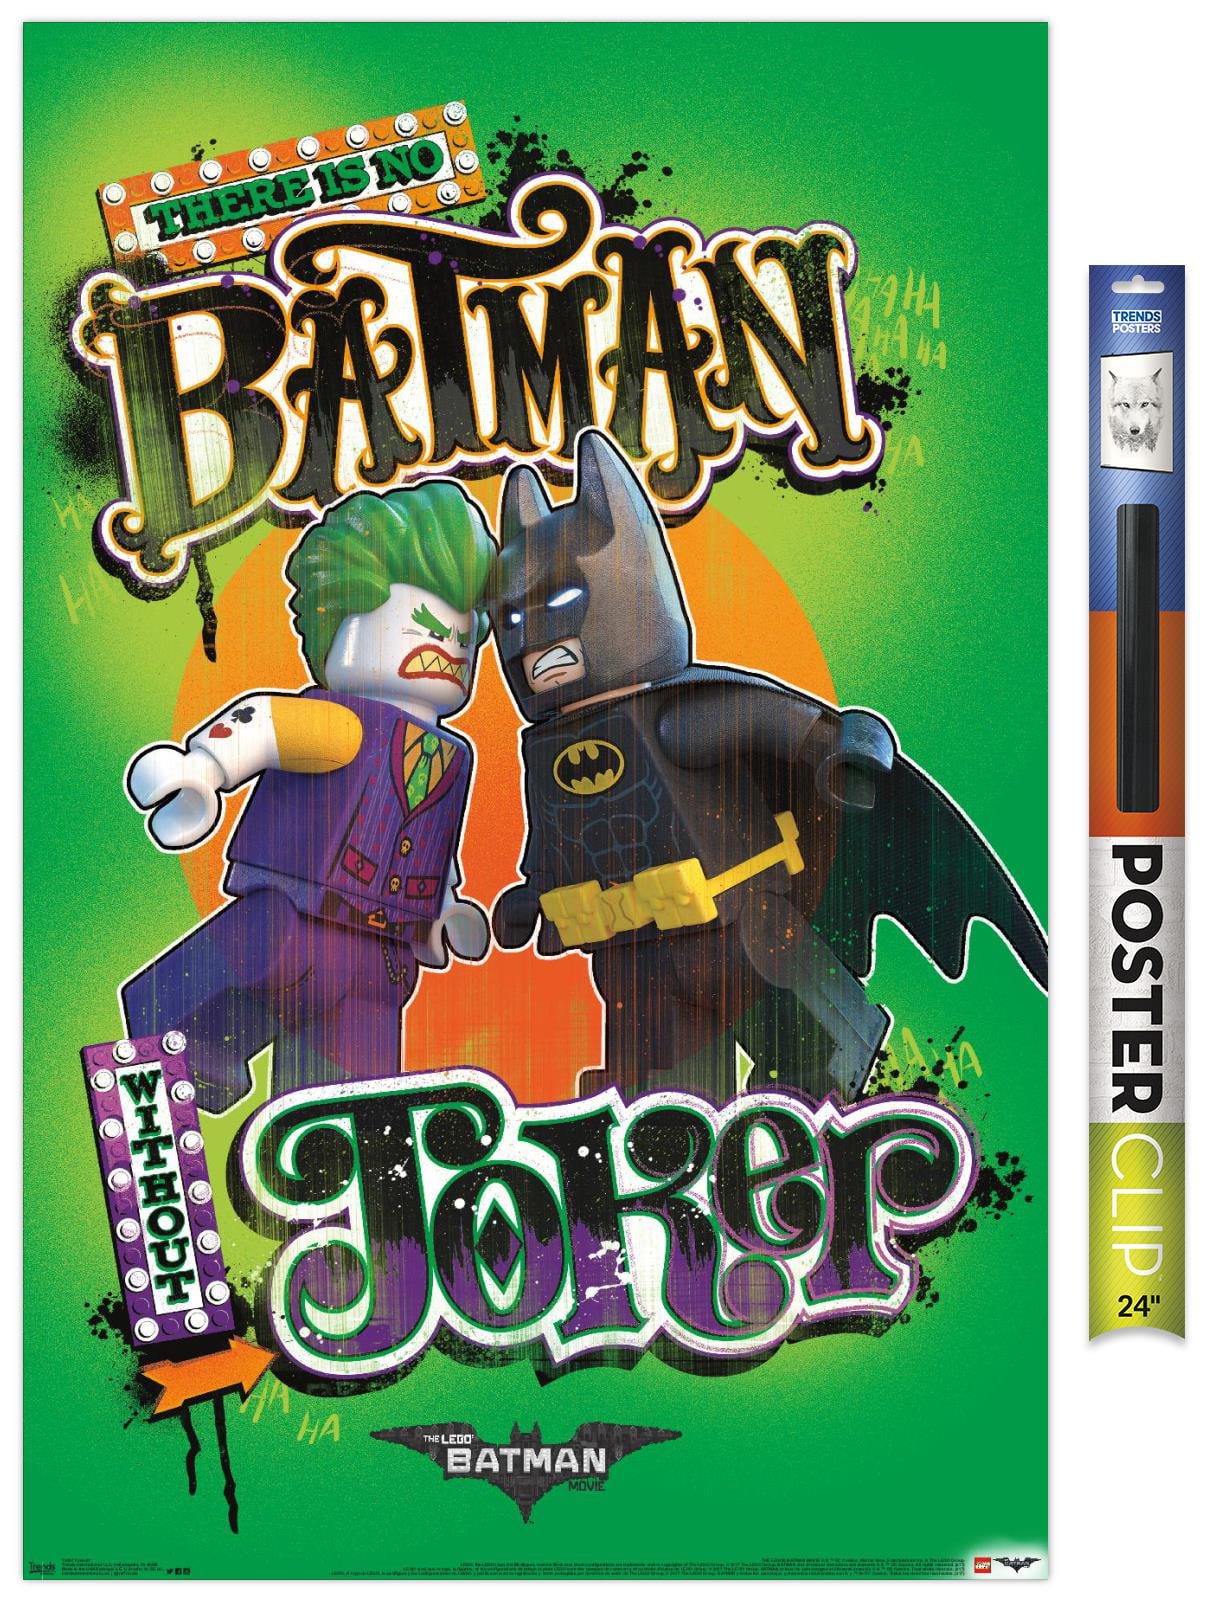 Lego Batman - Faceoff Premium Poster and Poster Clip ...